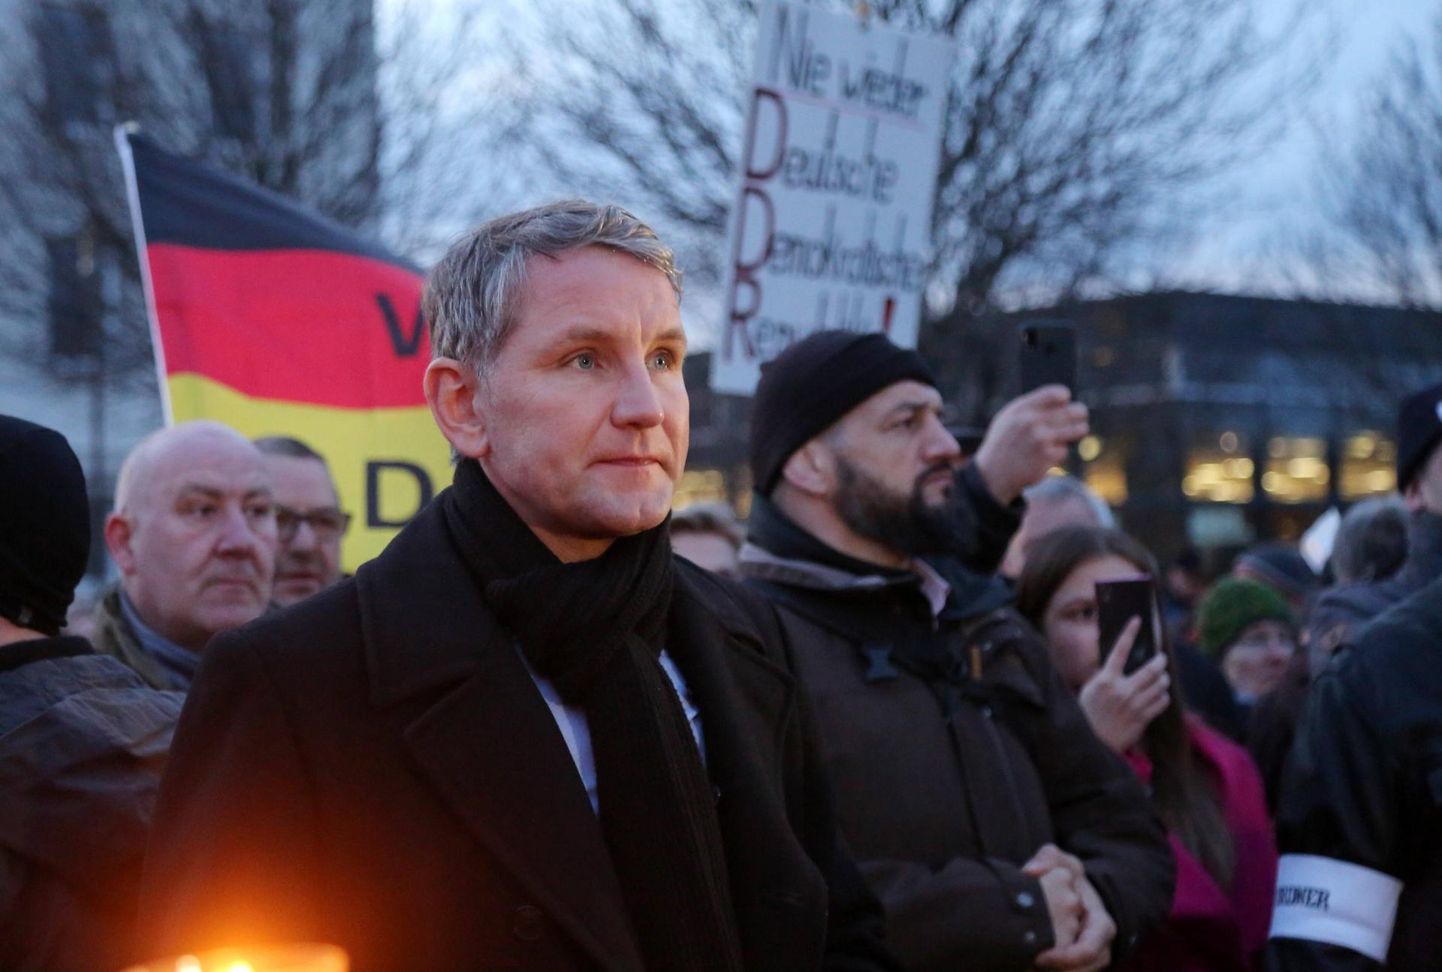 Partei Alternatiiv Saksamaale (AfD) mõjukas liige Björn Höcke on Saksa sisejulgeolekuameti BfV hinnangul paremäärmuslane. Ise väidab mees, et austab põhiseaduslikku korda.